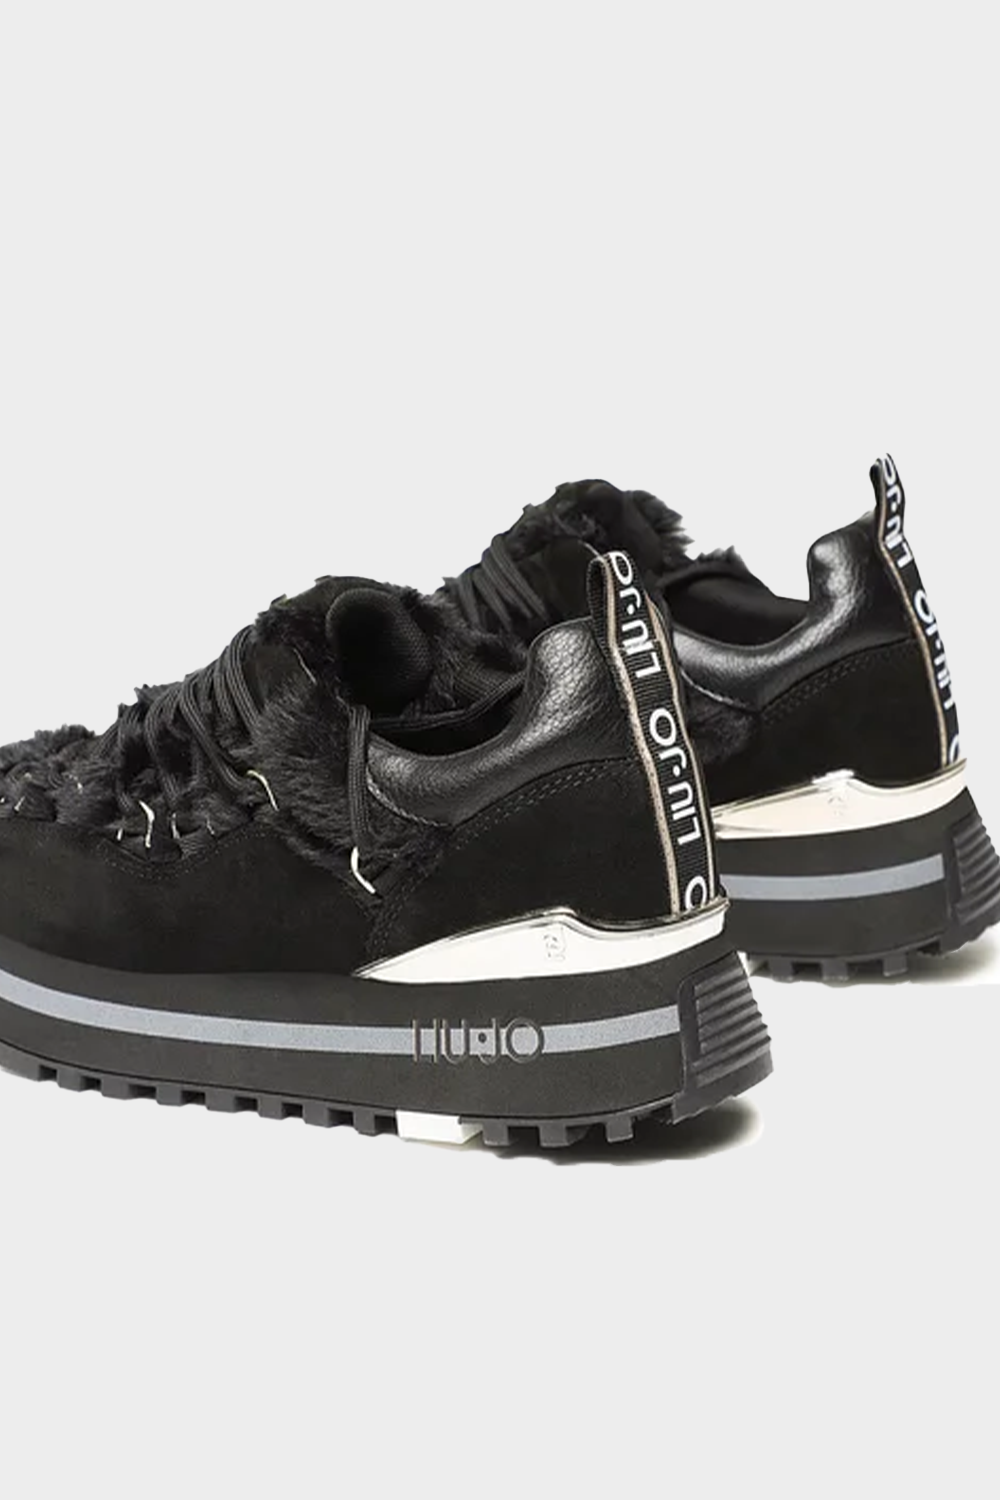 נעלי סניקרס לנשים בצבע שחור LIU JO Vendome online | ונדום .